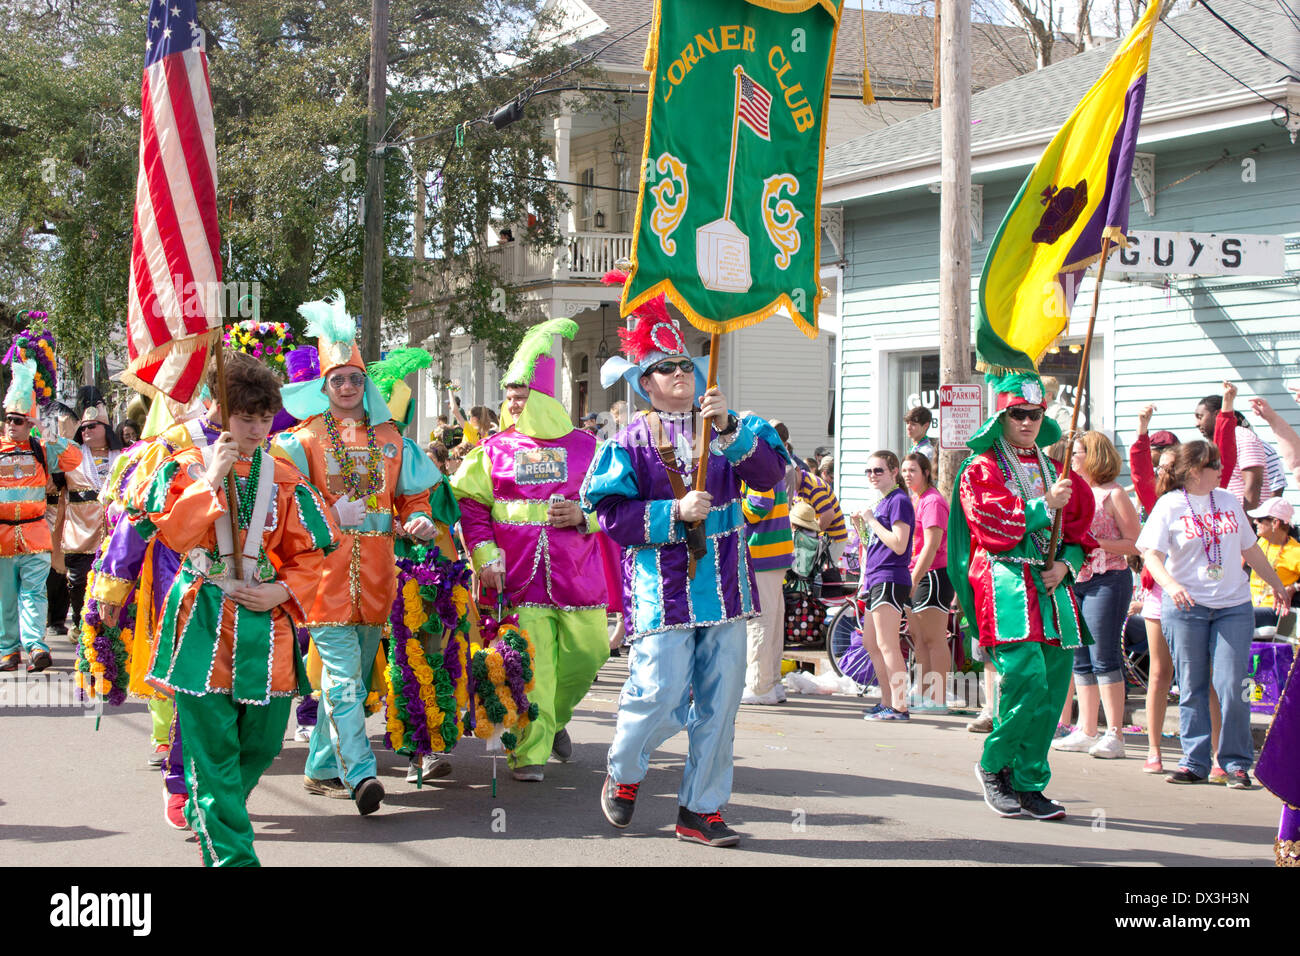 Club de marche dans le coin du groupe costumes avec les drapeaux. La saison de Mardi Gras de la Nouvelle Orléans. Banque D'Images